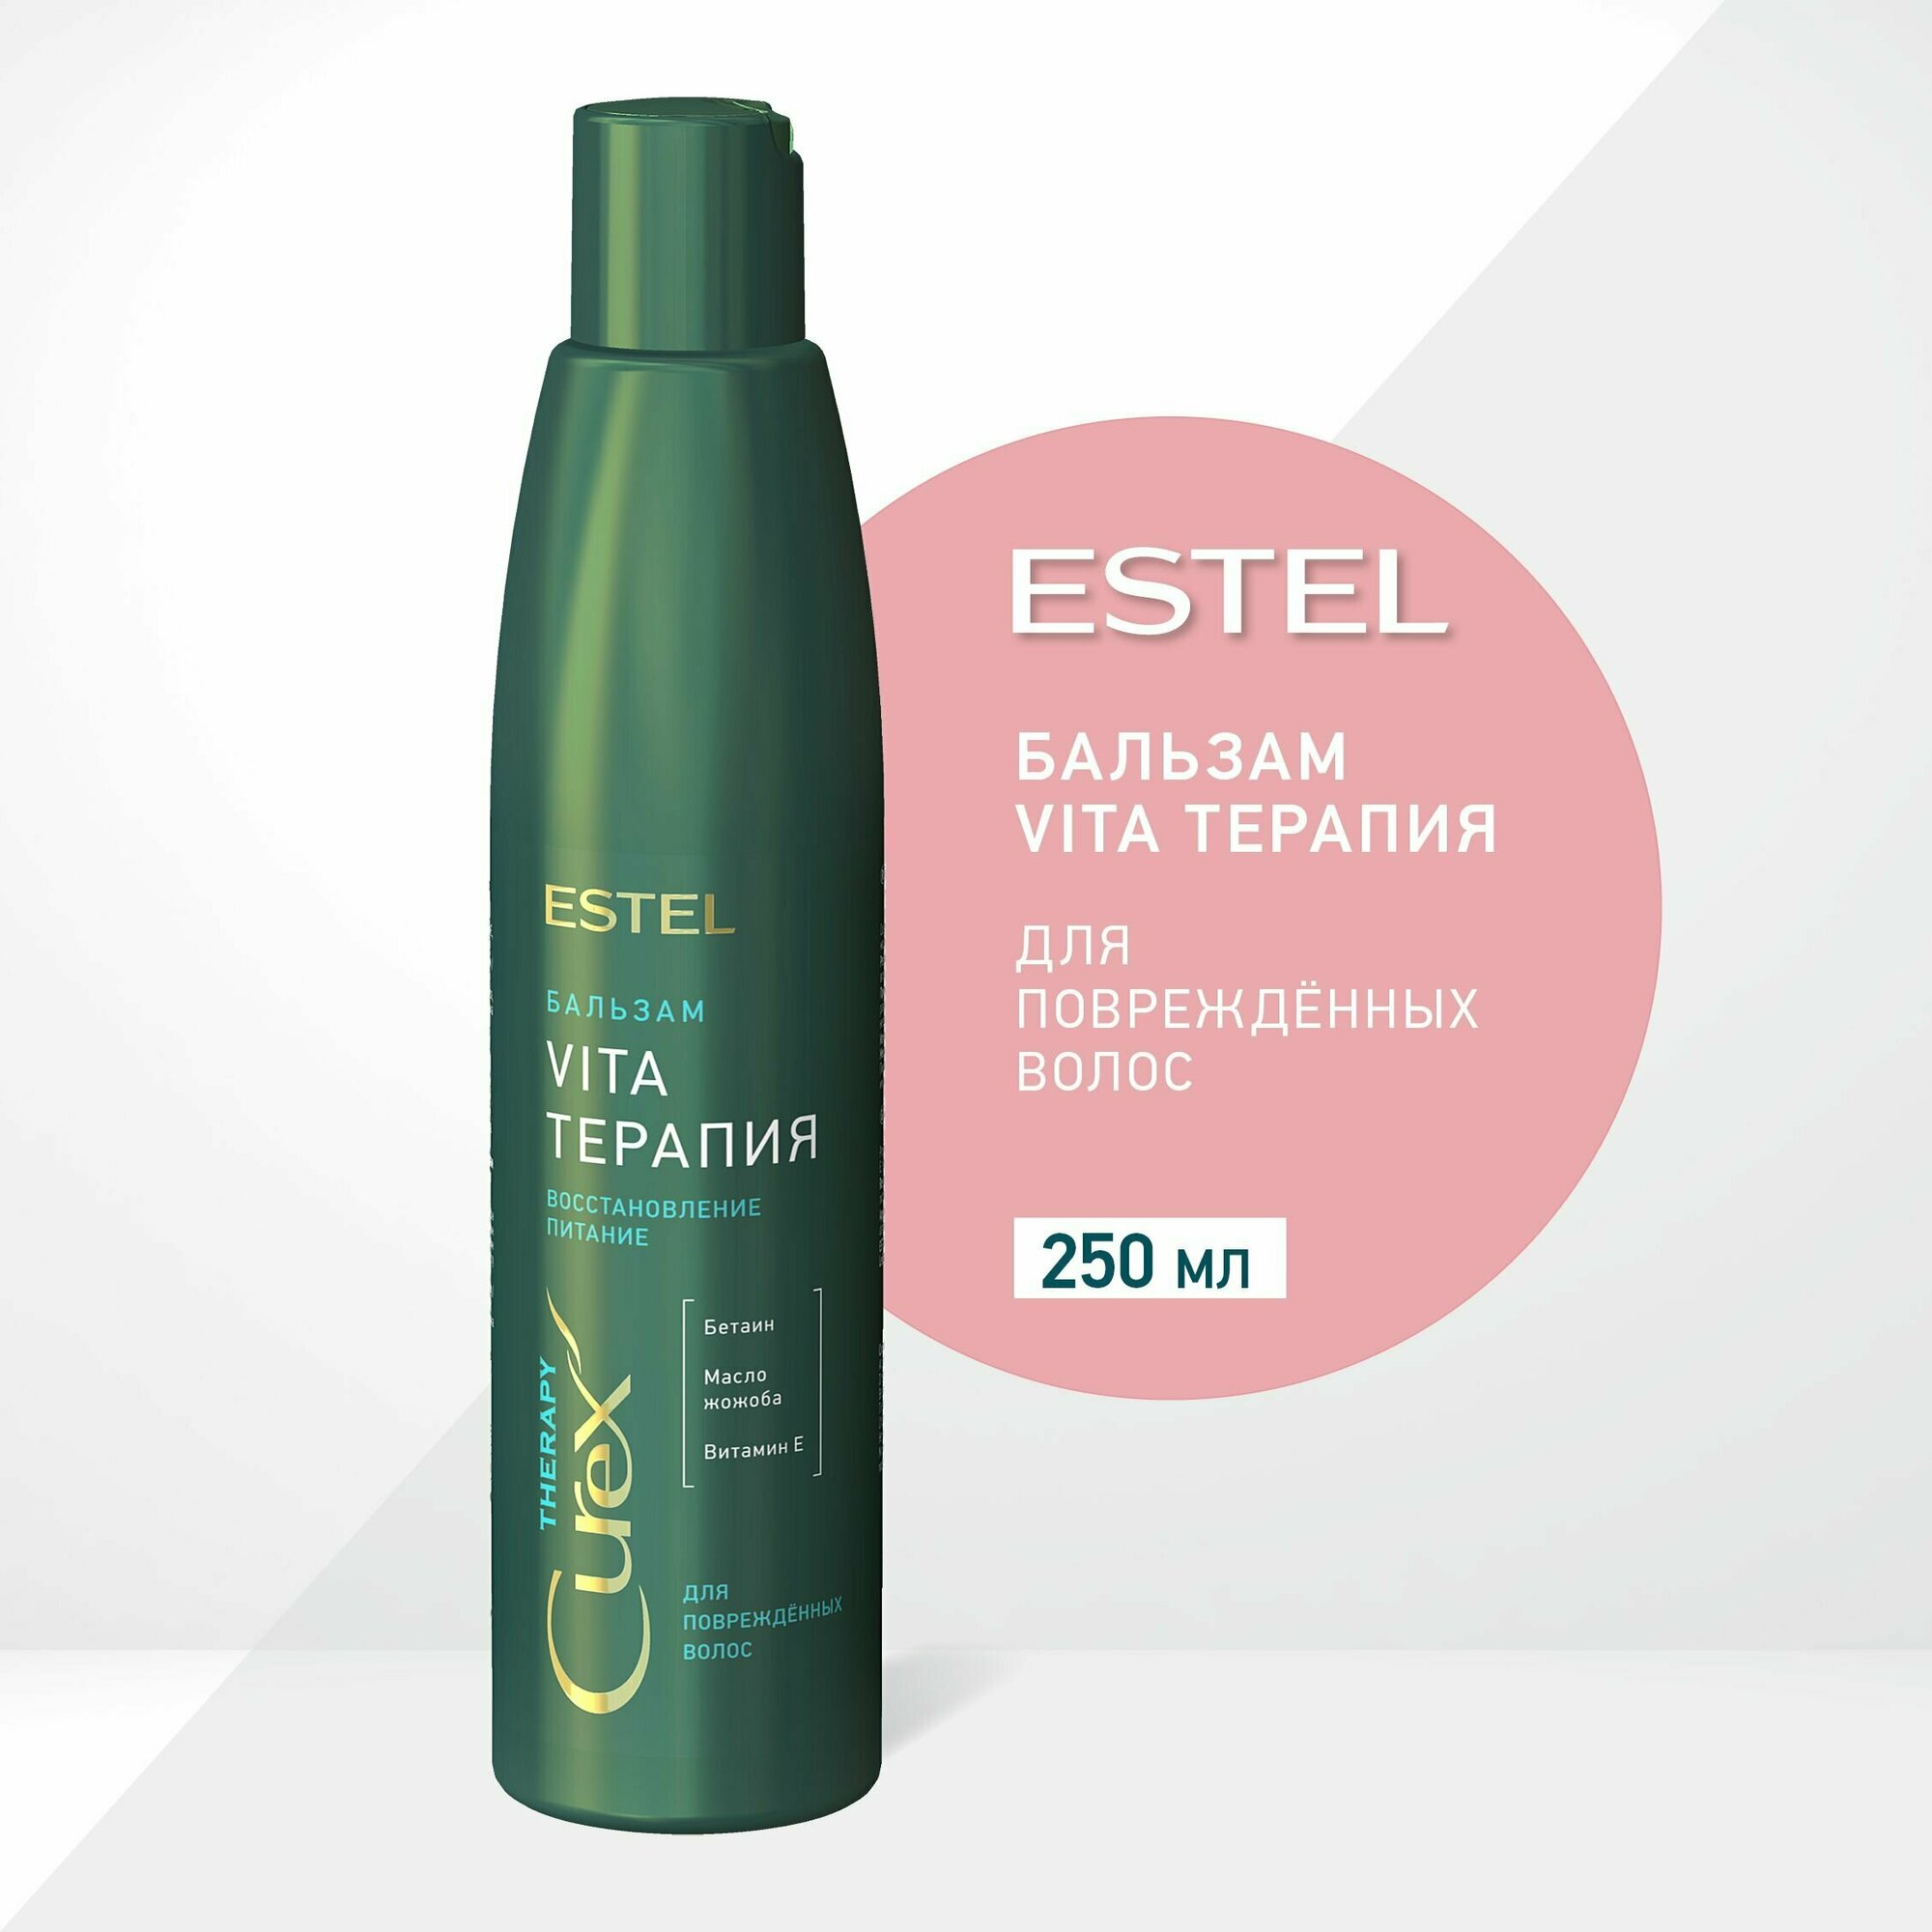 ESTEL Сurex Vita-Терапия Бальзам для повреждённых волос